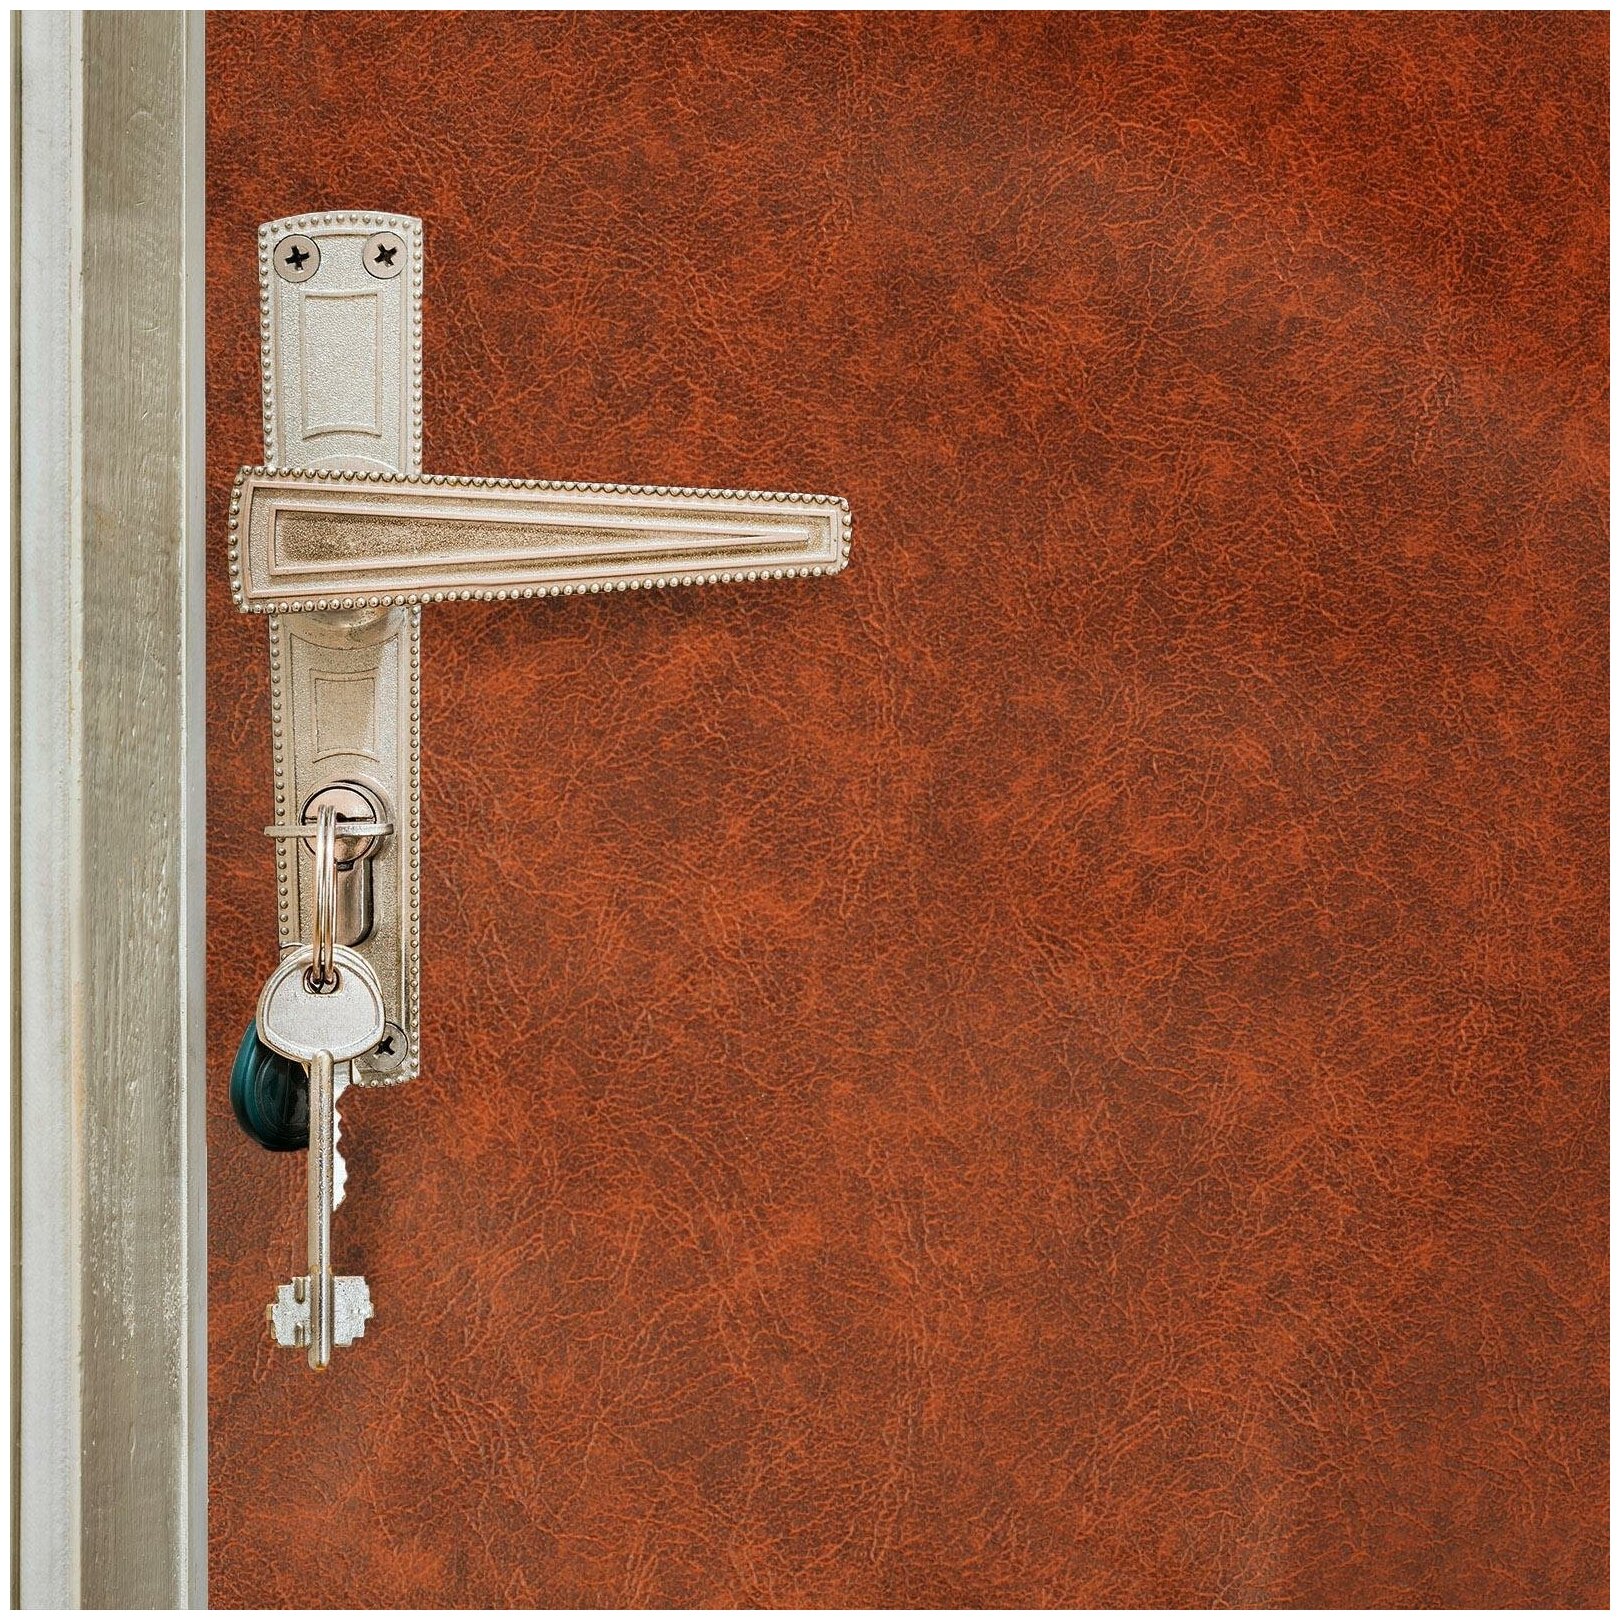 Комплект для обивки дверей 110 x 205 см: иск. кожа поролон 5 мм гвозди струна рыжий 